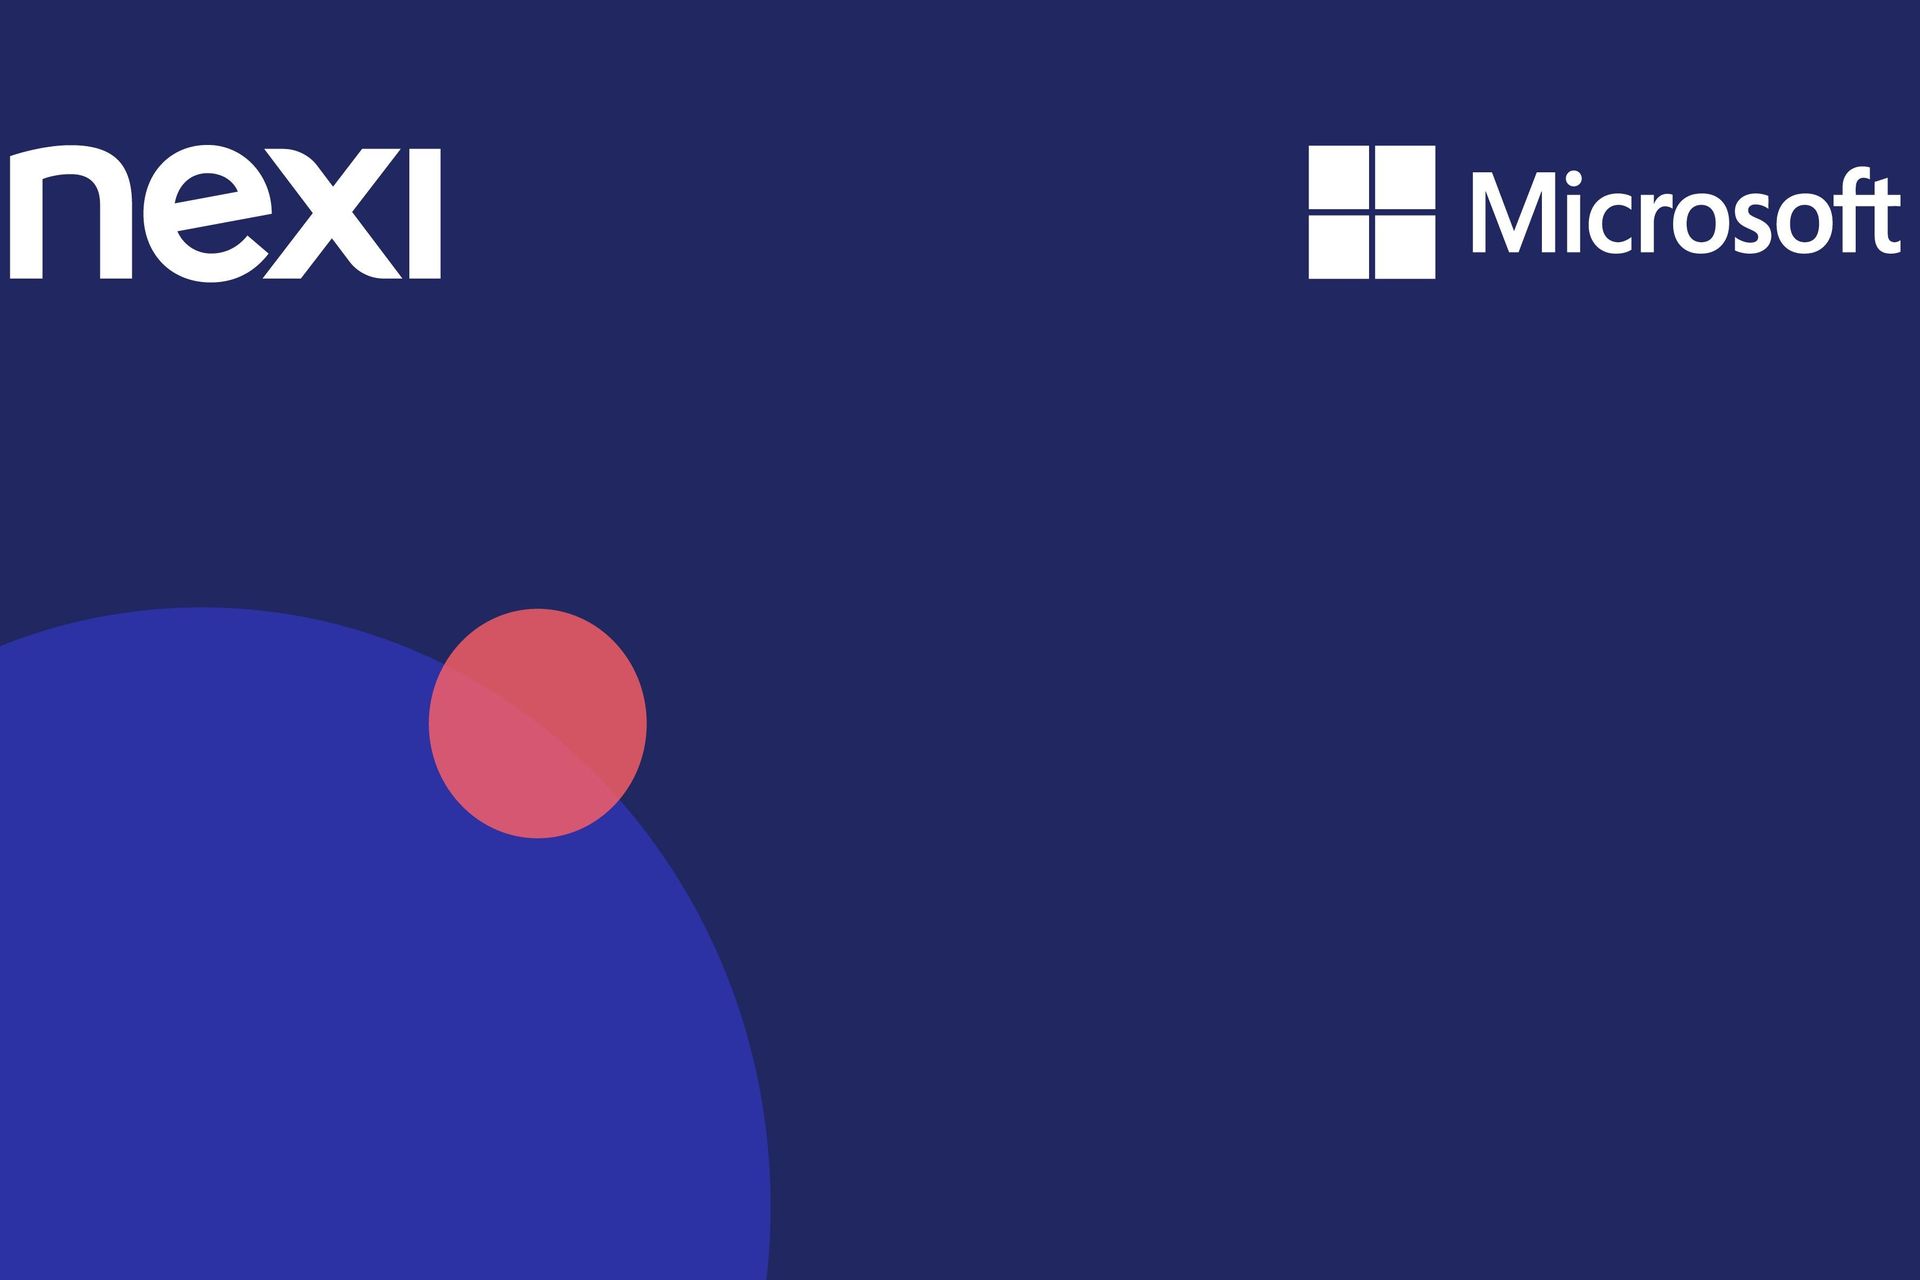 さまざまな市場で事業を展開するヨーロッパのペイテックである Nexi とデジタル化の巨人 Microsoft との新しいコラボレーション